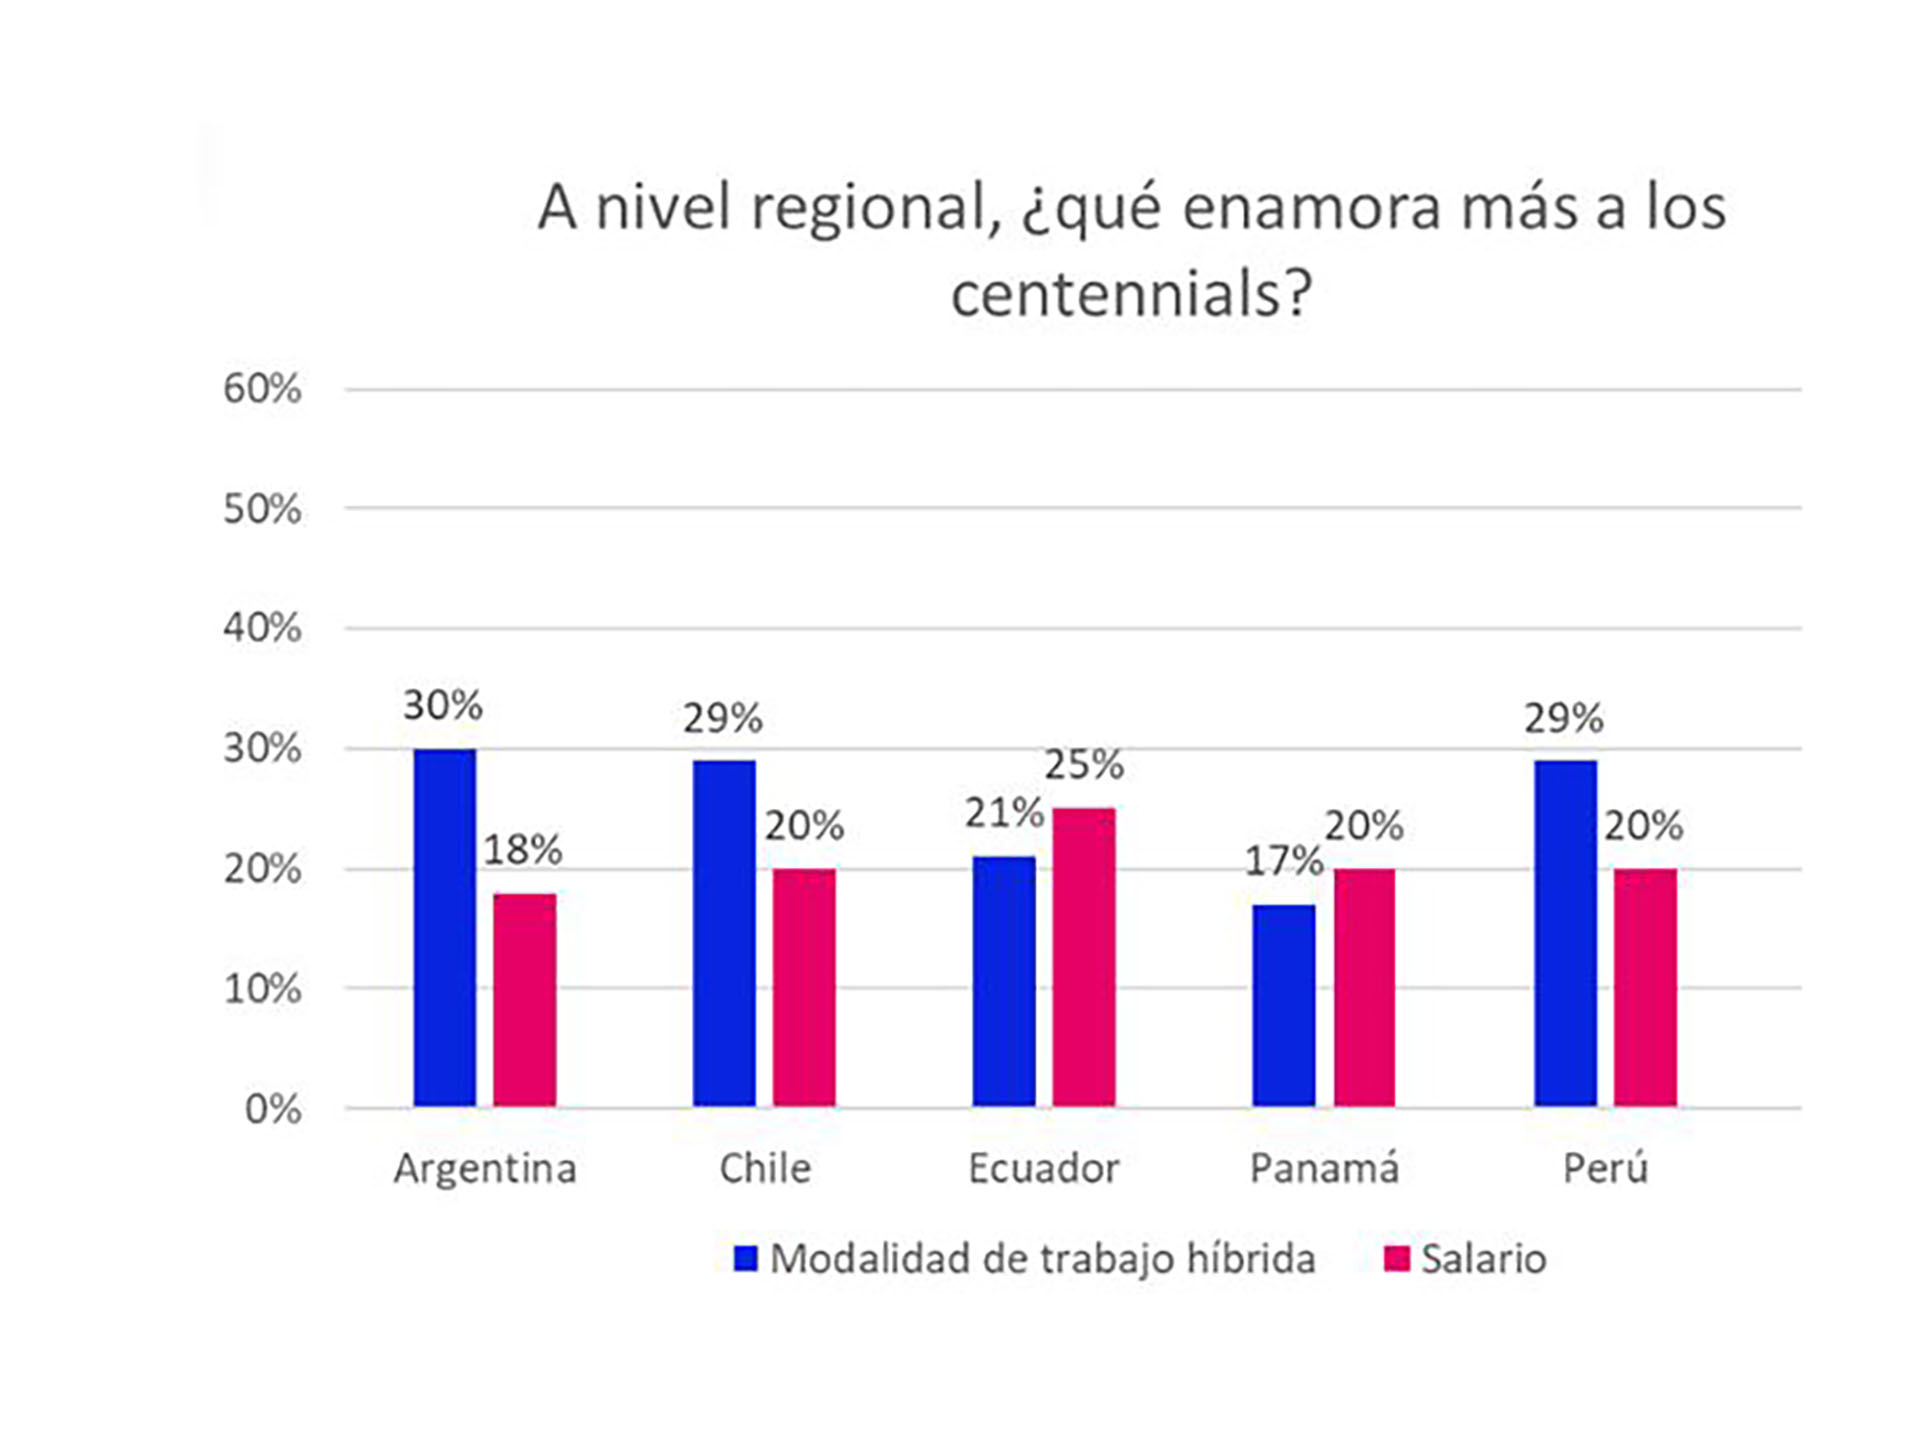 Entre 5 países latinoamericanos considerados, los centennials argentinos son los que más valoran la posibilidad de trabajo híbrido